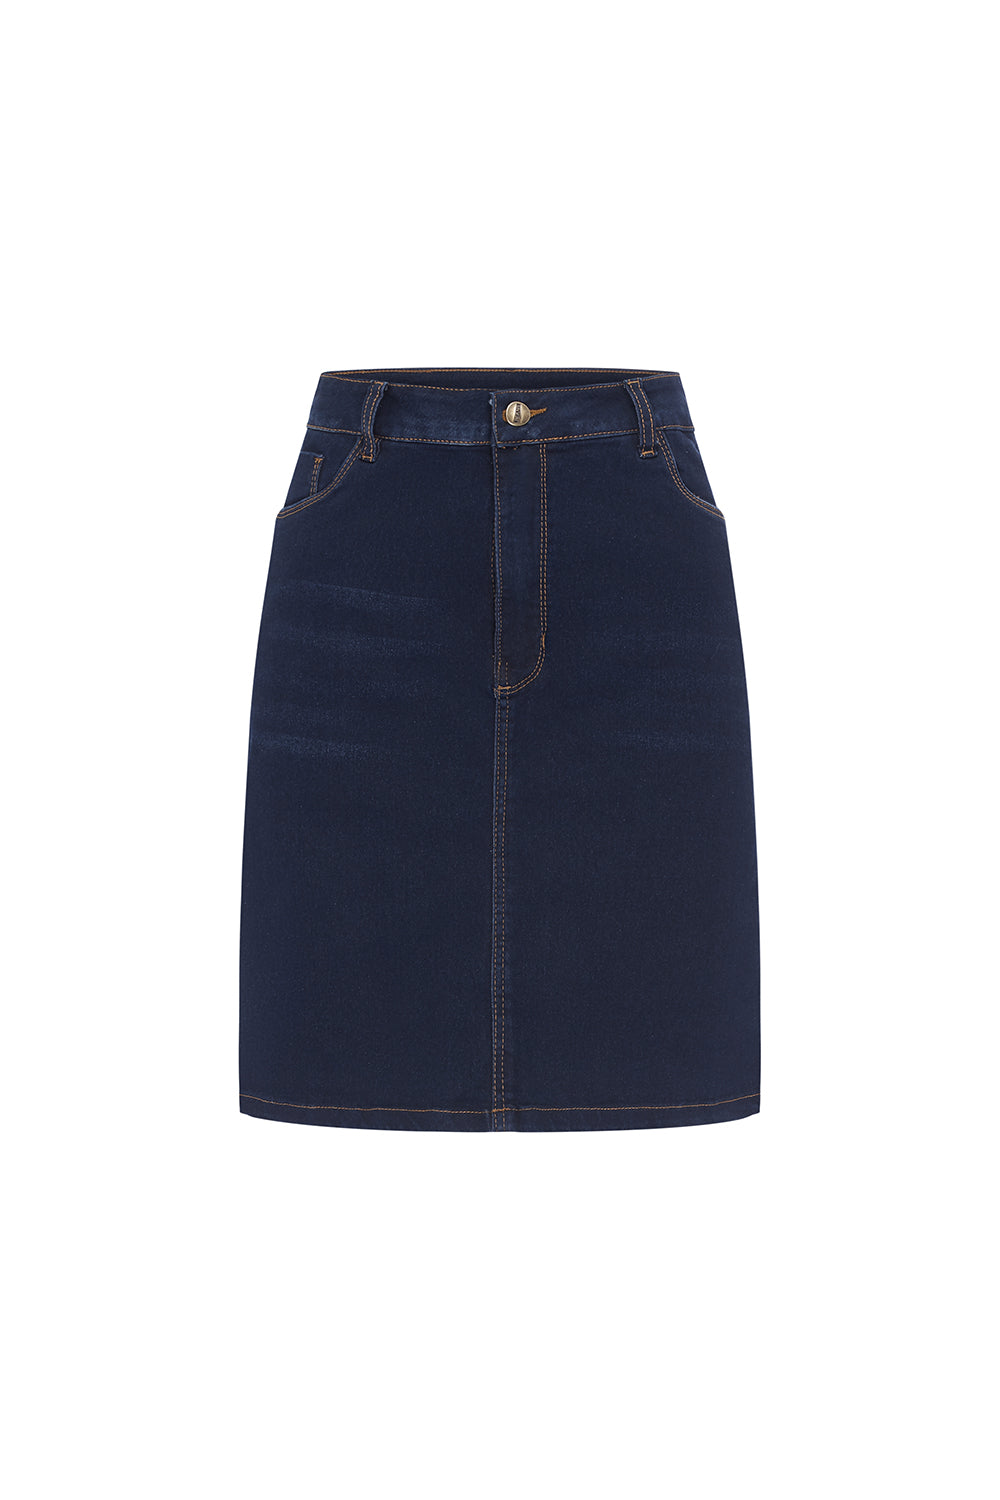 Amber Blue Denim Skirts Skirt